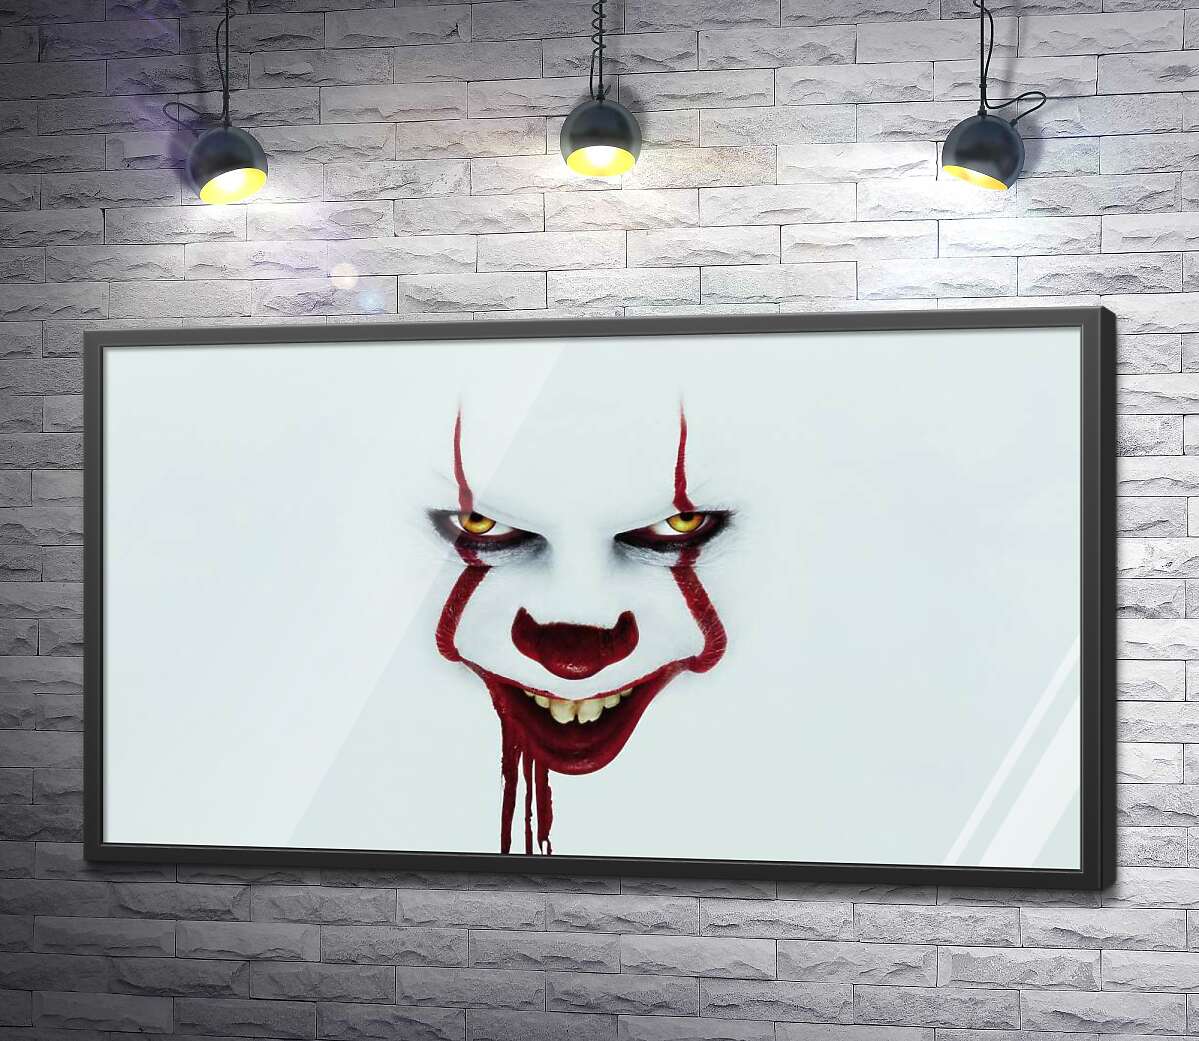 постер Ужасающая улыбка клоуна-убийцы Пеннивайза (Pennywise) – героя фильма ужасов "Оно" (It)